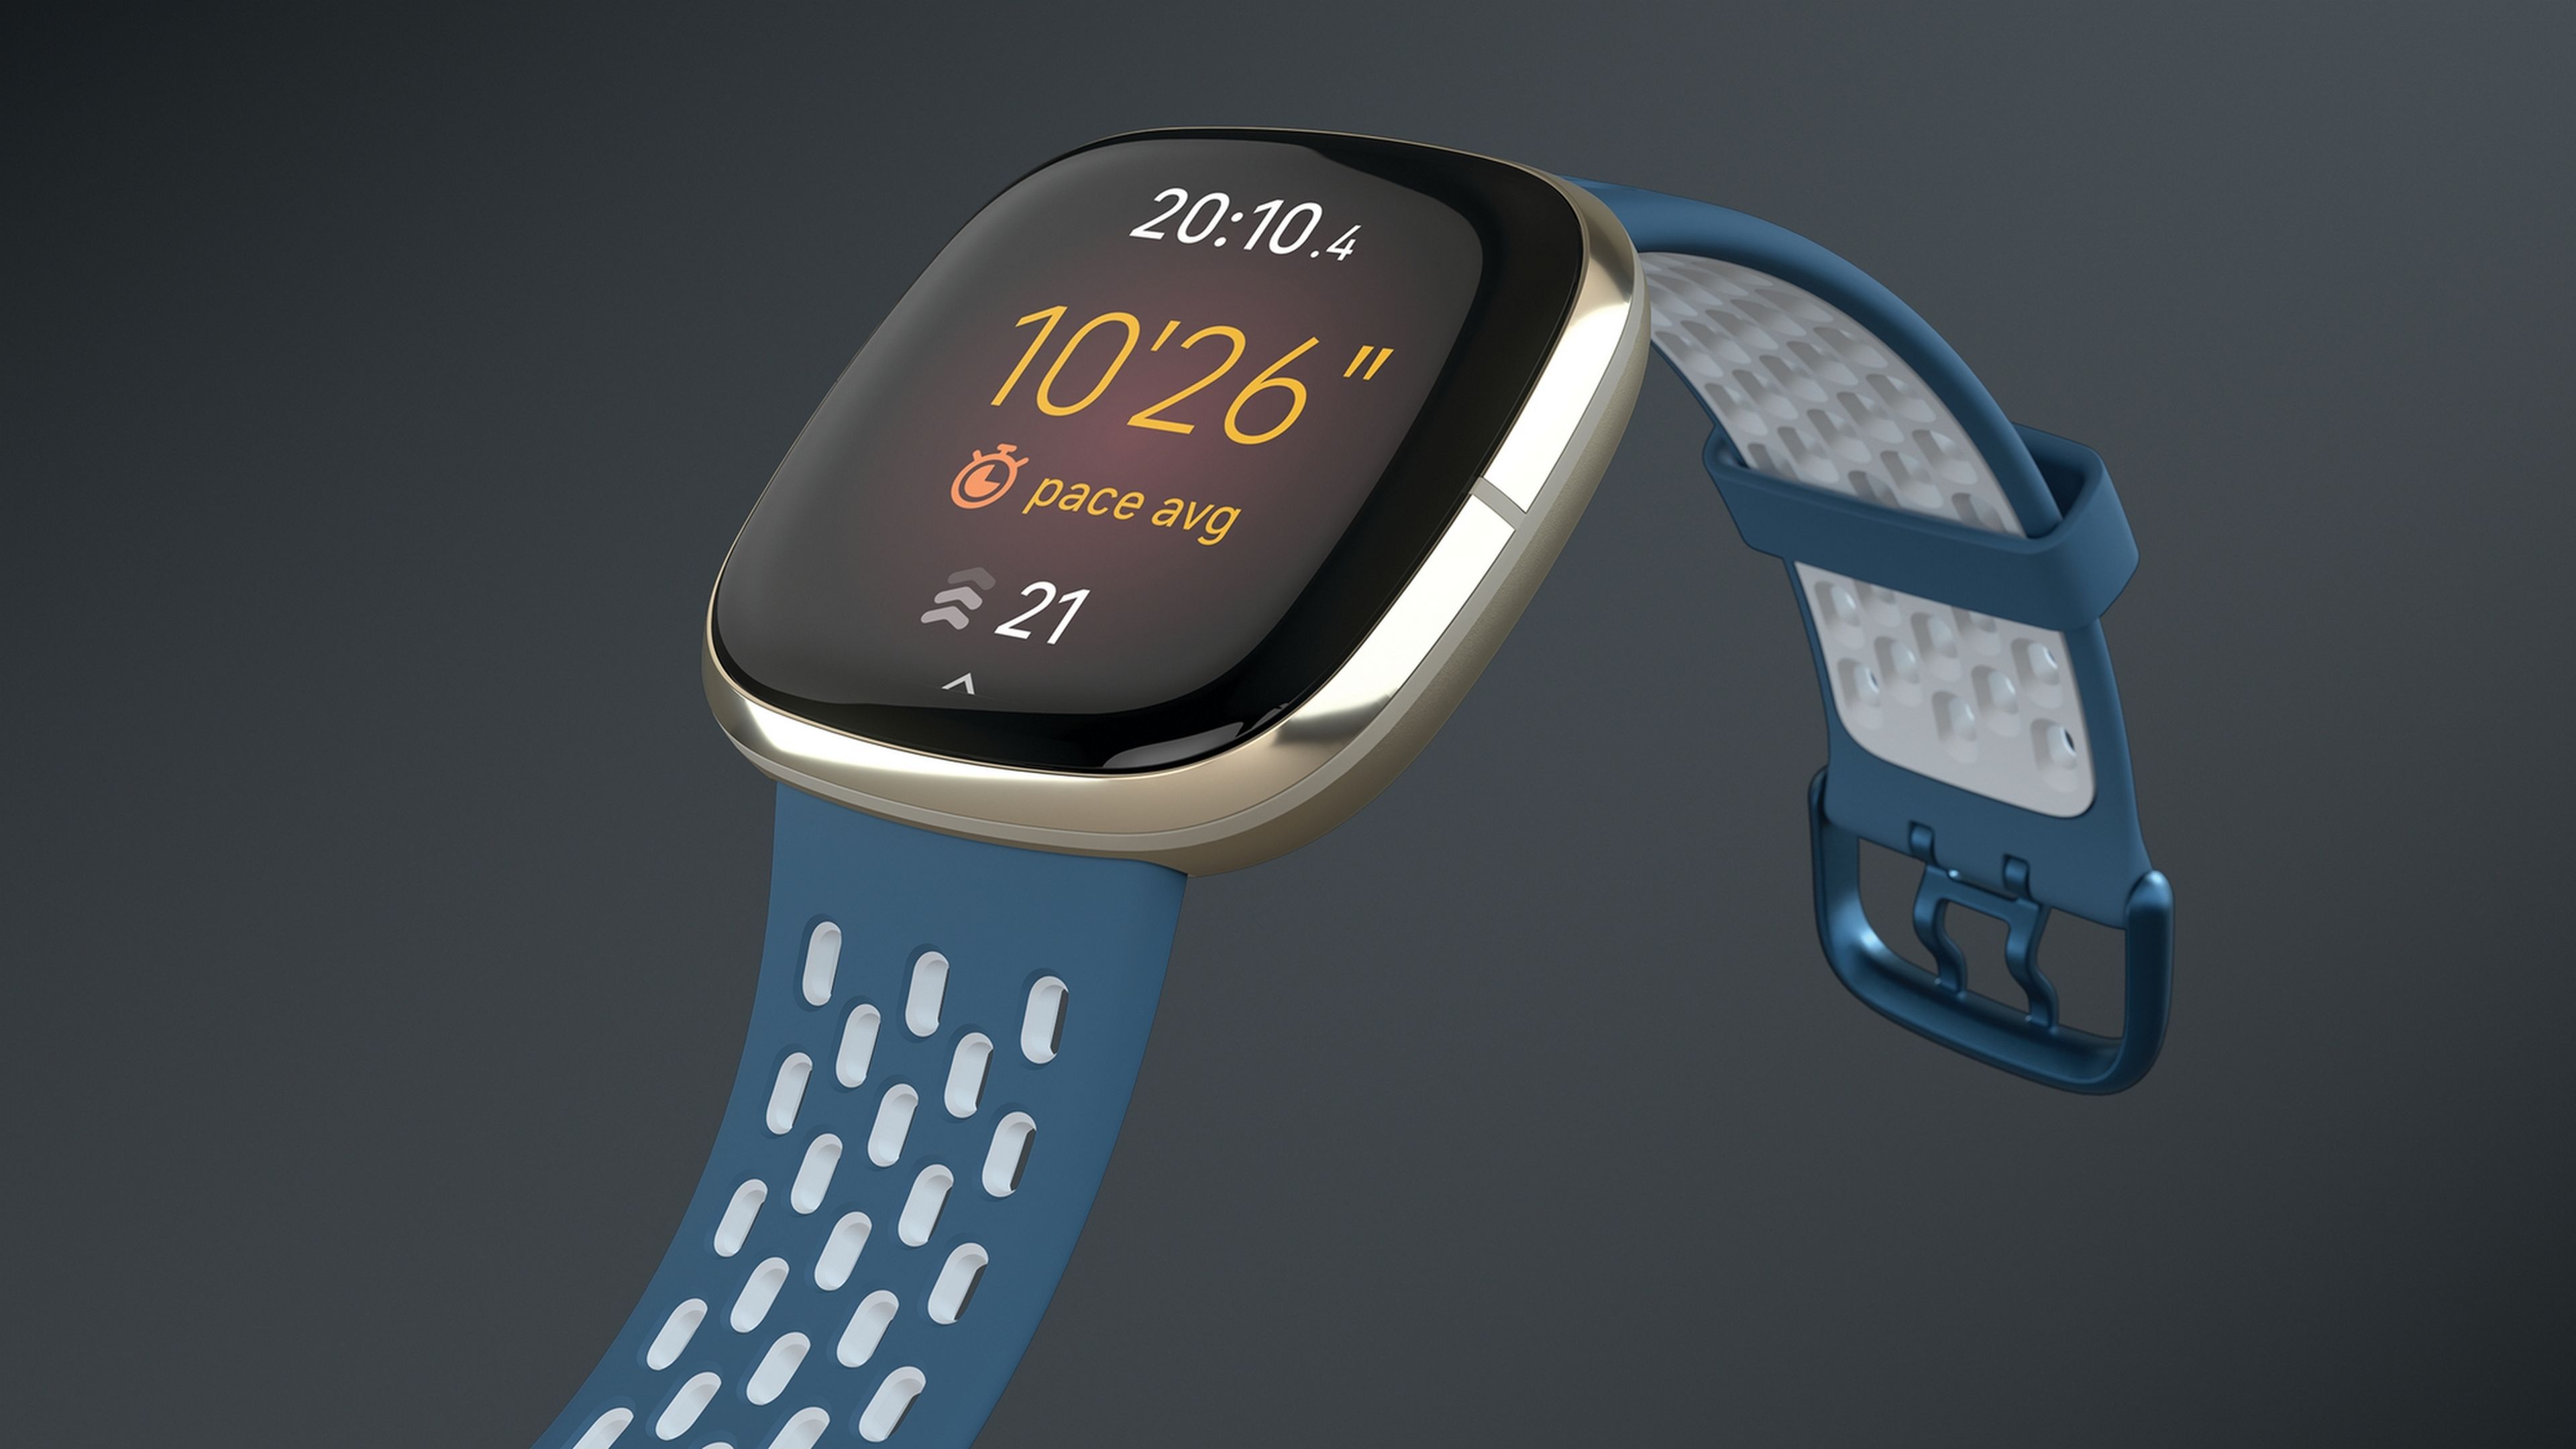 Fitbit da proridad a la salud frente al fitness con sus nuevos Fitbit Sense, Versa 3 e Inspire 2